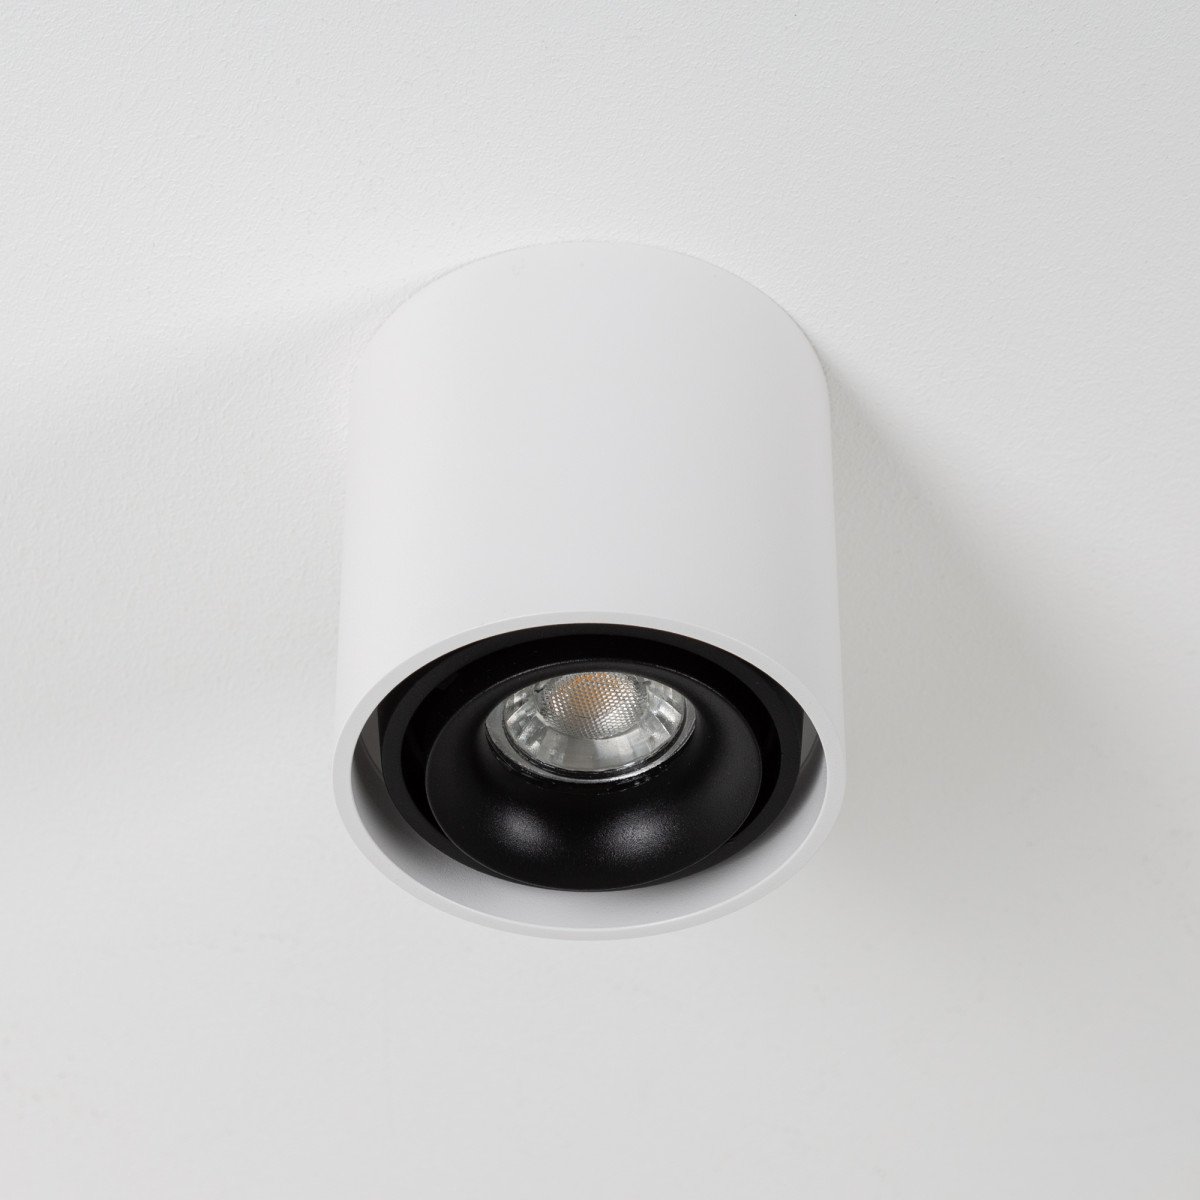 Éclairage d'intérieur Spot en saillie Oliver aux formes rondes, design moderne et finition de couleur noire.